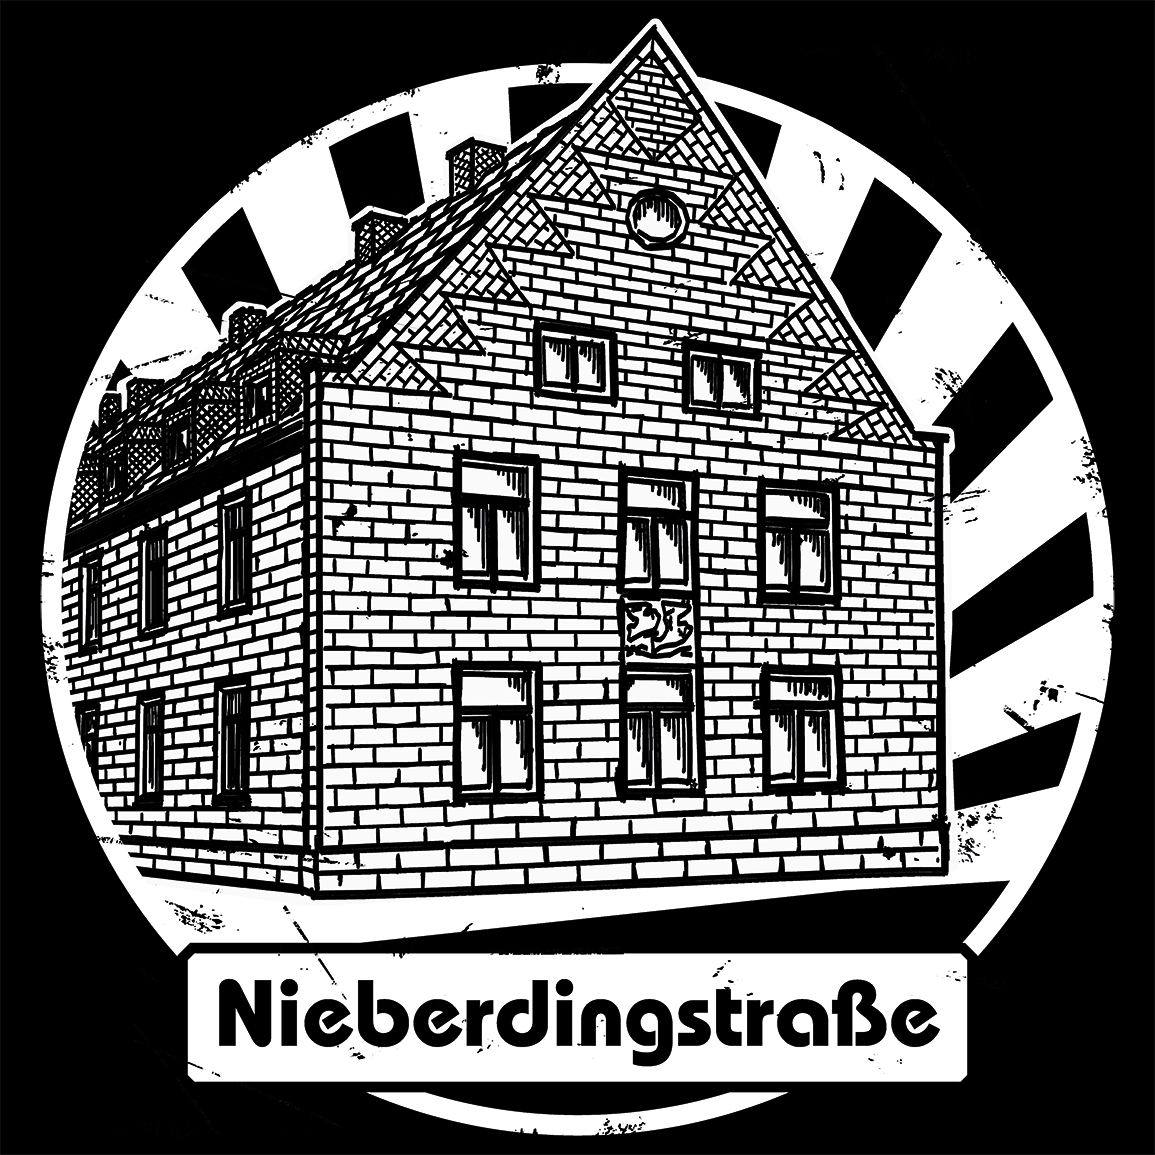 Nieberding Straßenfest 23 - 20 Jahre Nieberding e.V.